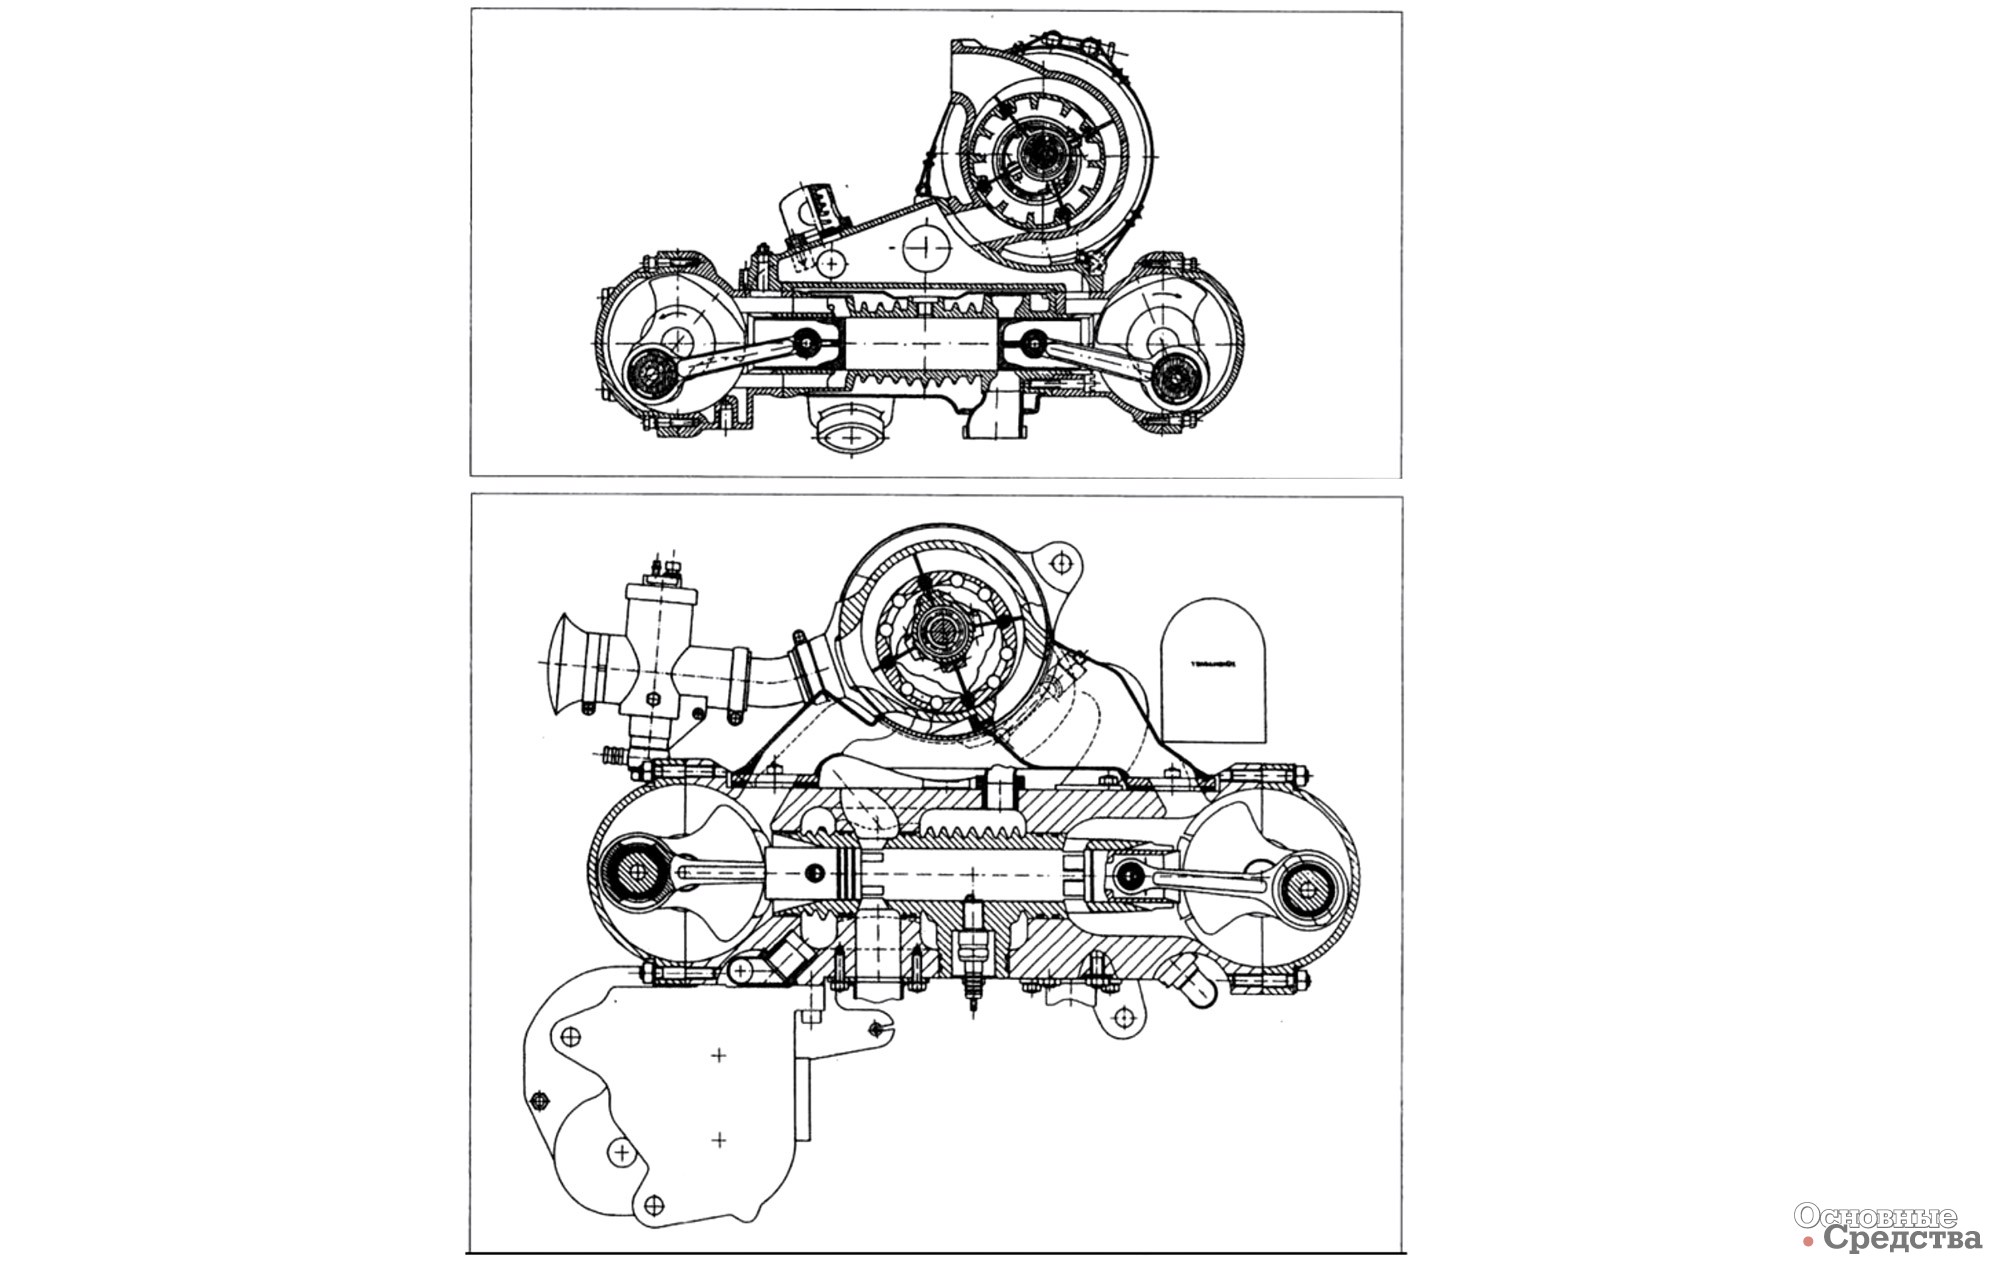 Рис. 17. Двигатели с оппозитными поршнями (вверху двигатель СКТБ 10, внизу двигатель DKW)